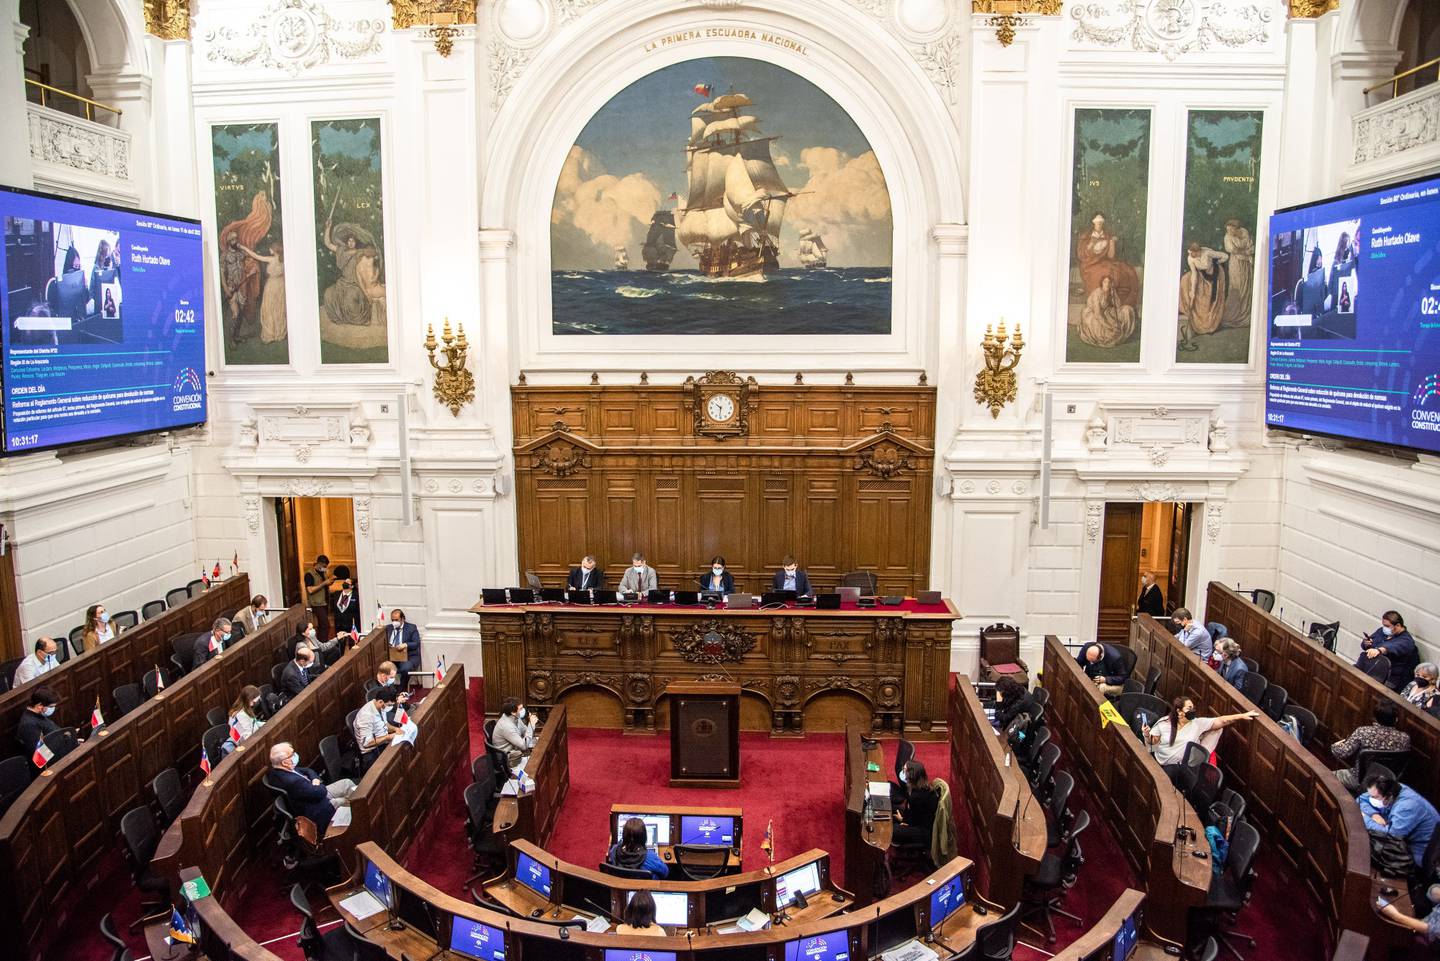 Legisladores asisten a una reunión de la Convención Constitucional en el antiguo Congreso Nacional de Chile en Santiago, Chile.dfd